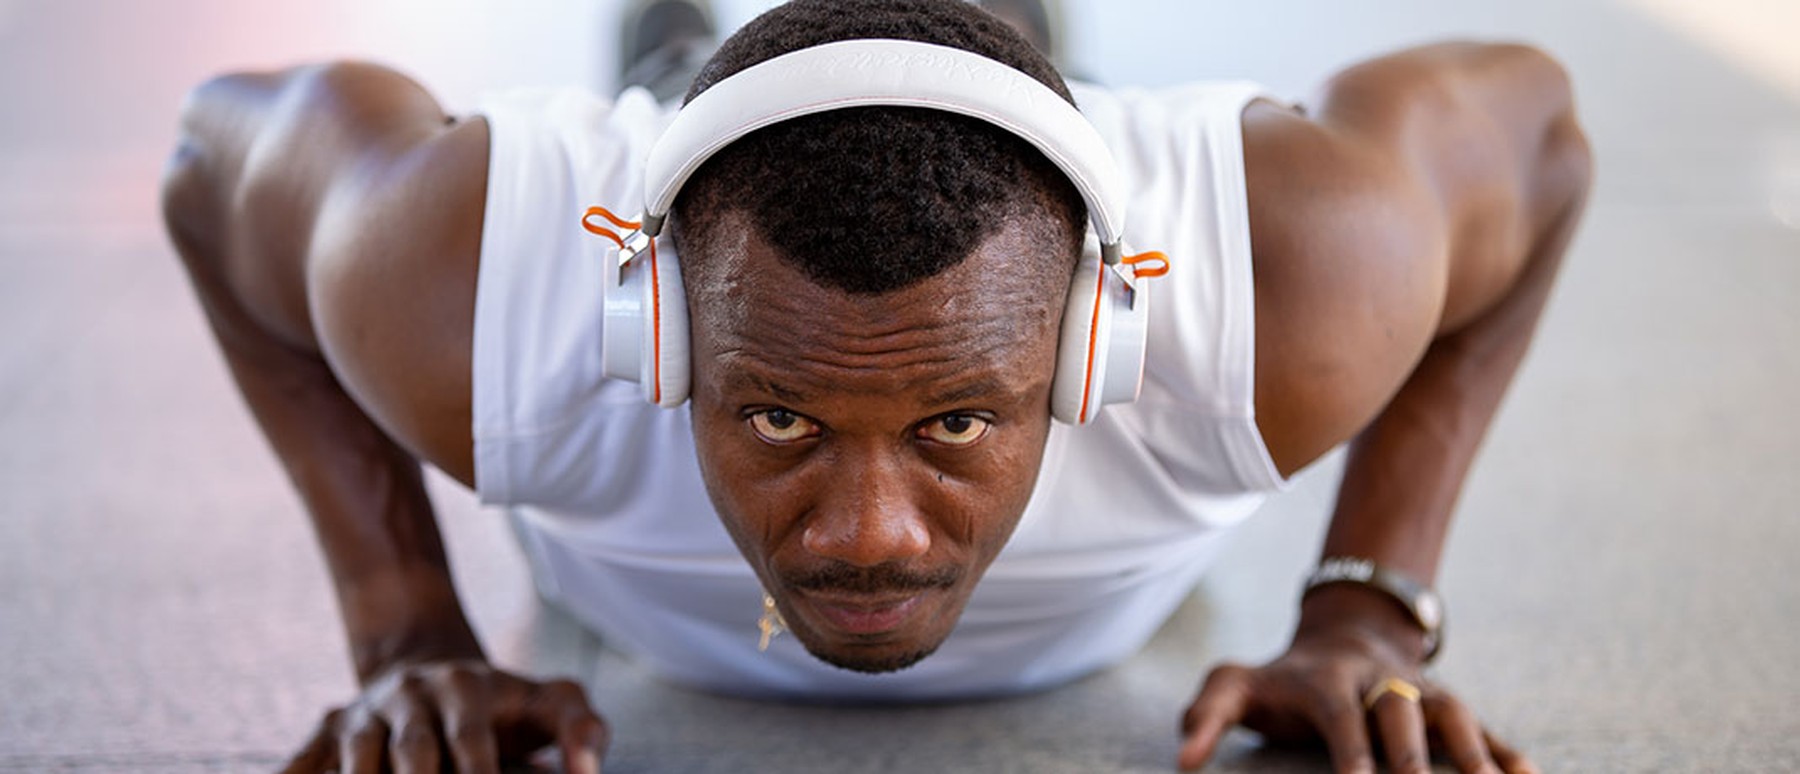 Man wearing headphones while doing pushups